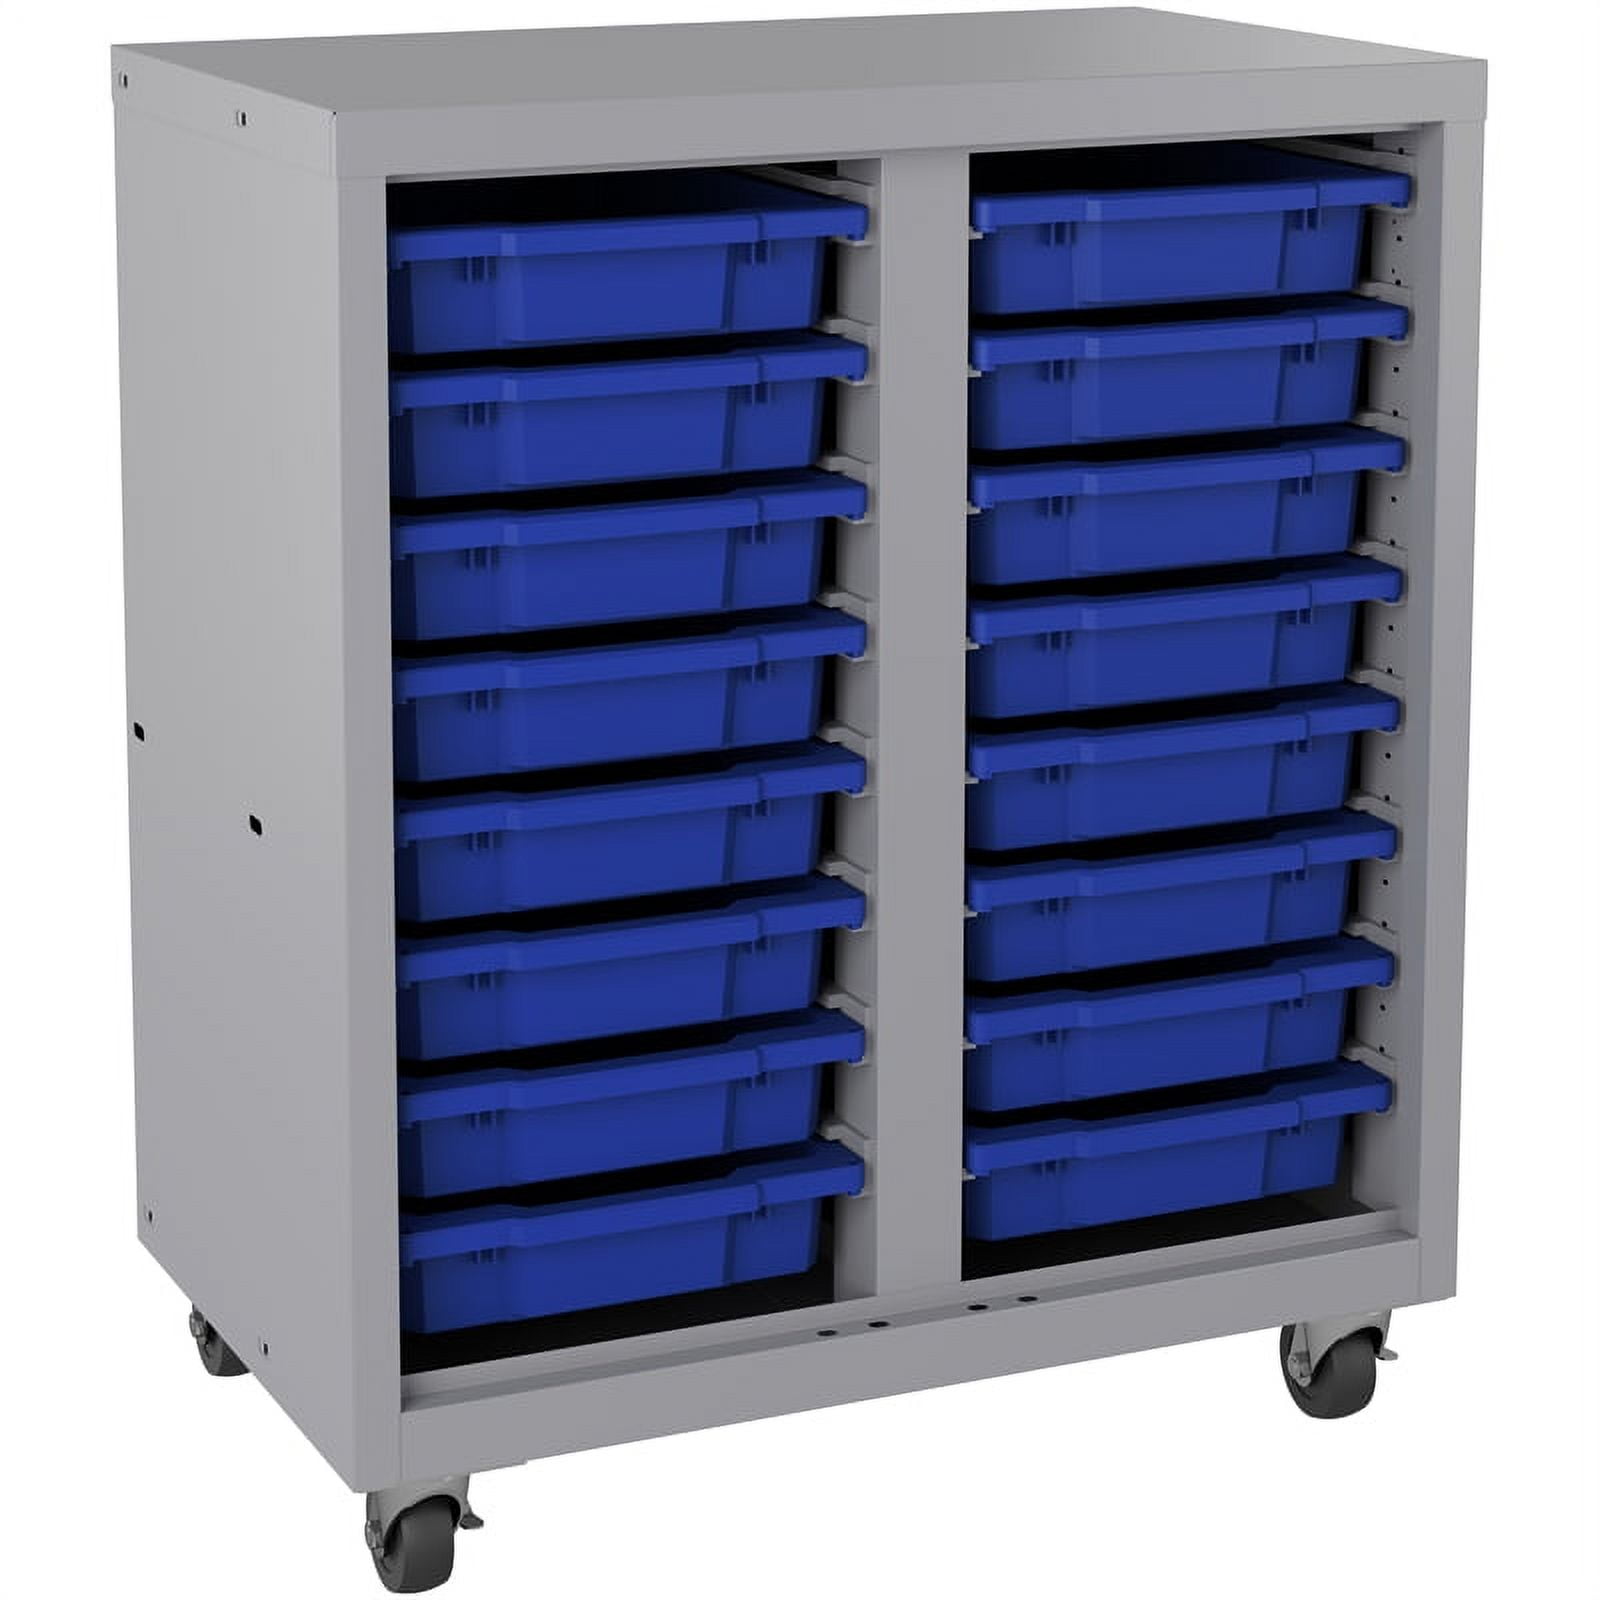 Shelf Bin Organizer - 36 x 18 x 39 with 11 x 18 x 4 Blue Bins